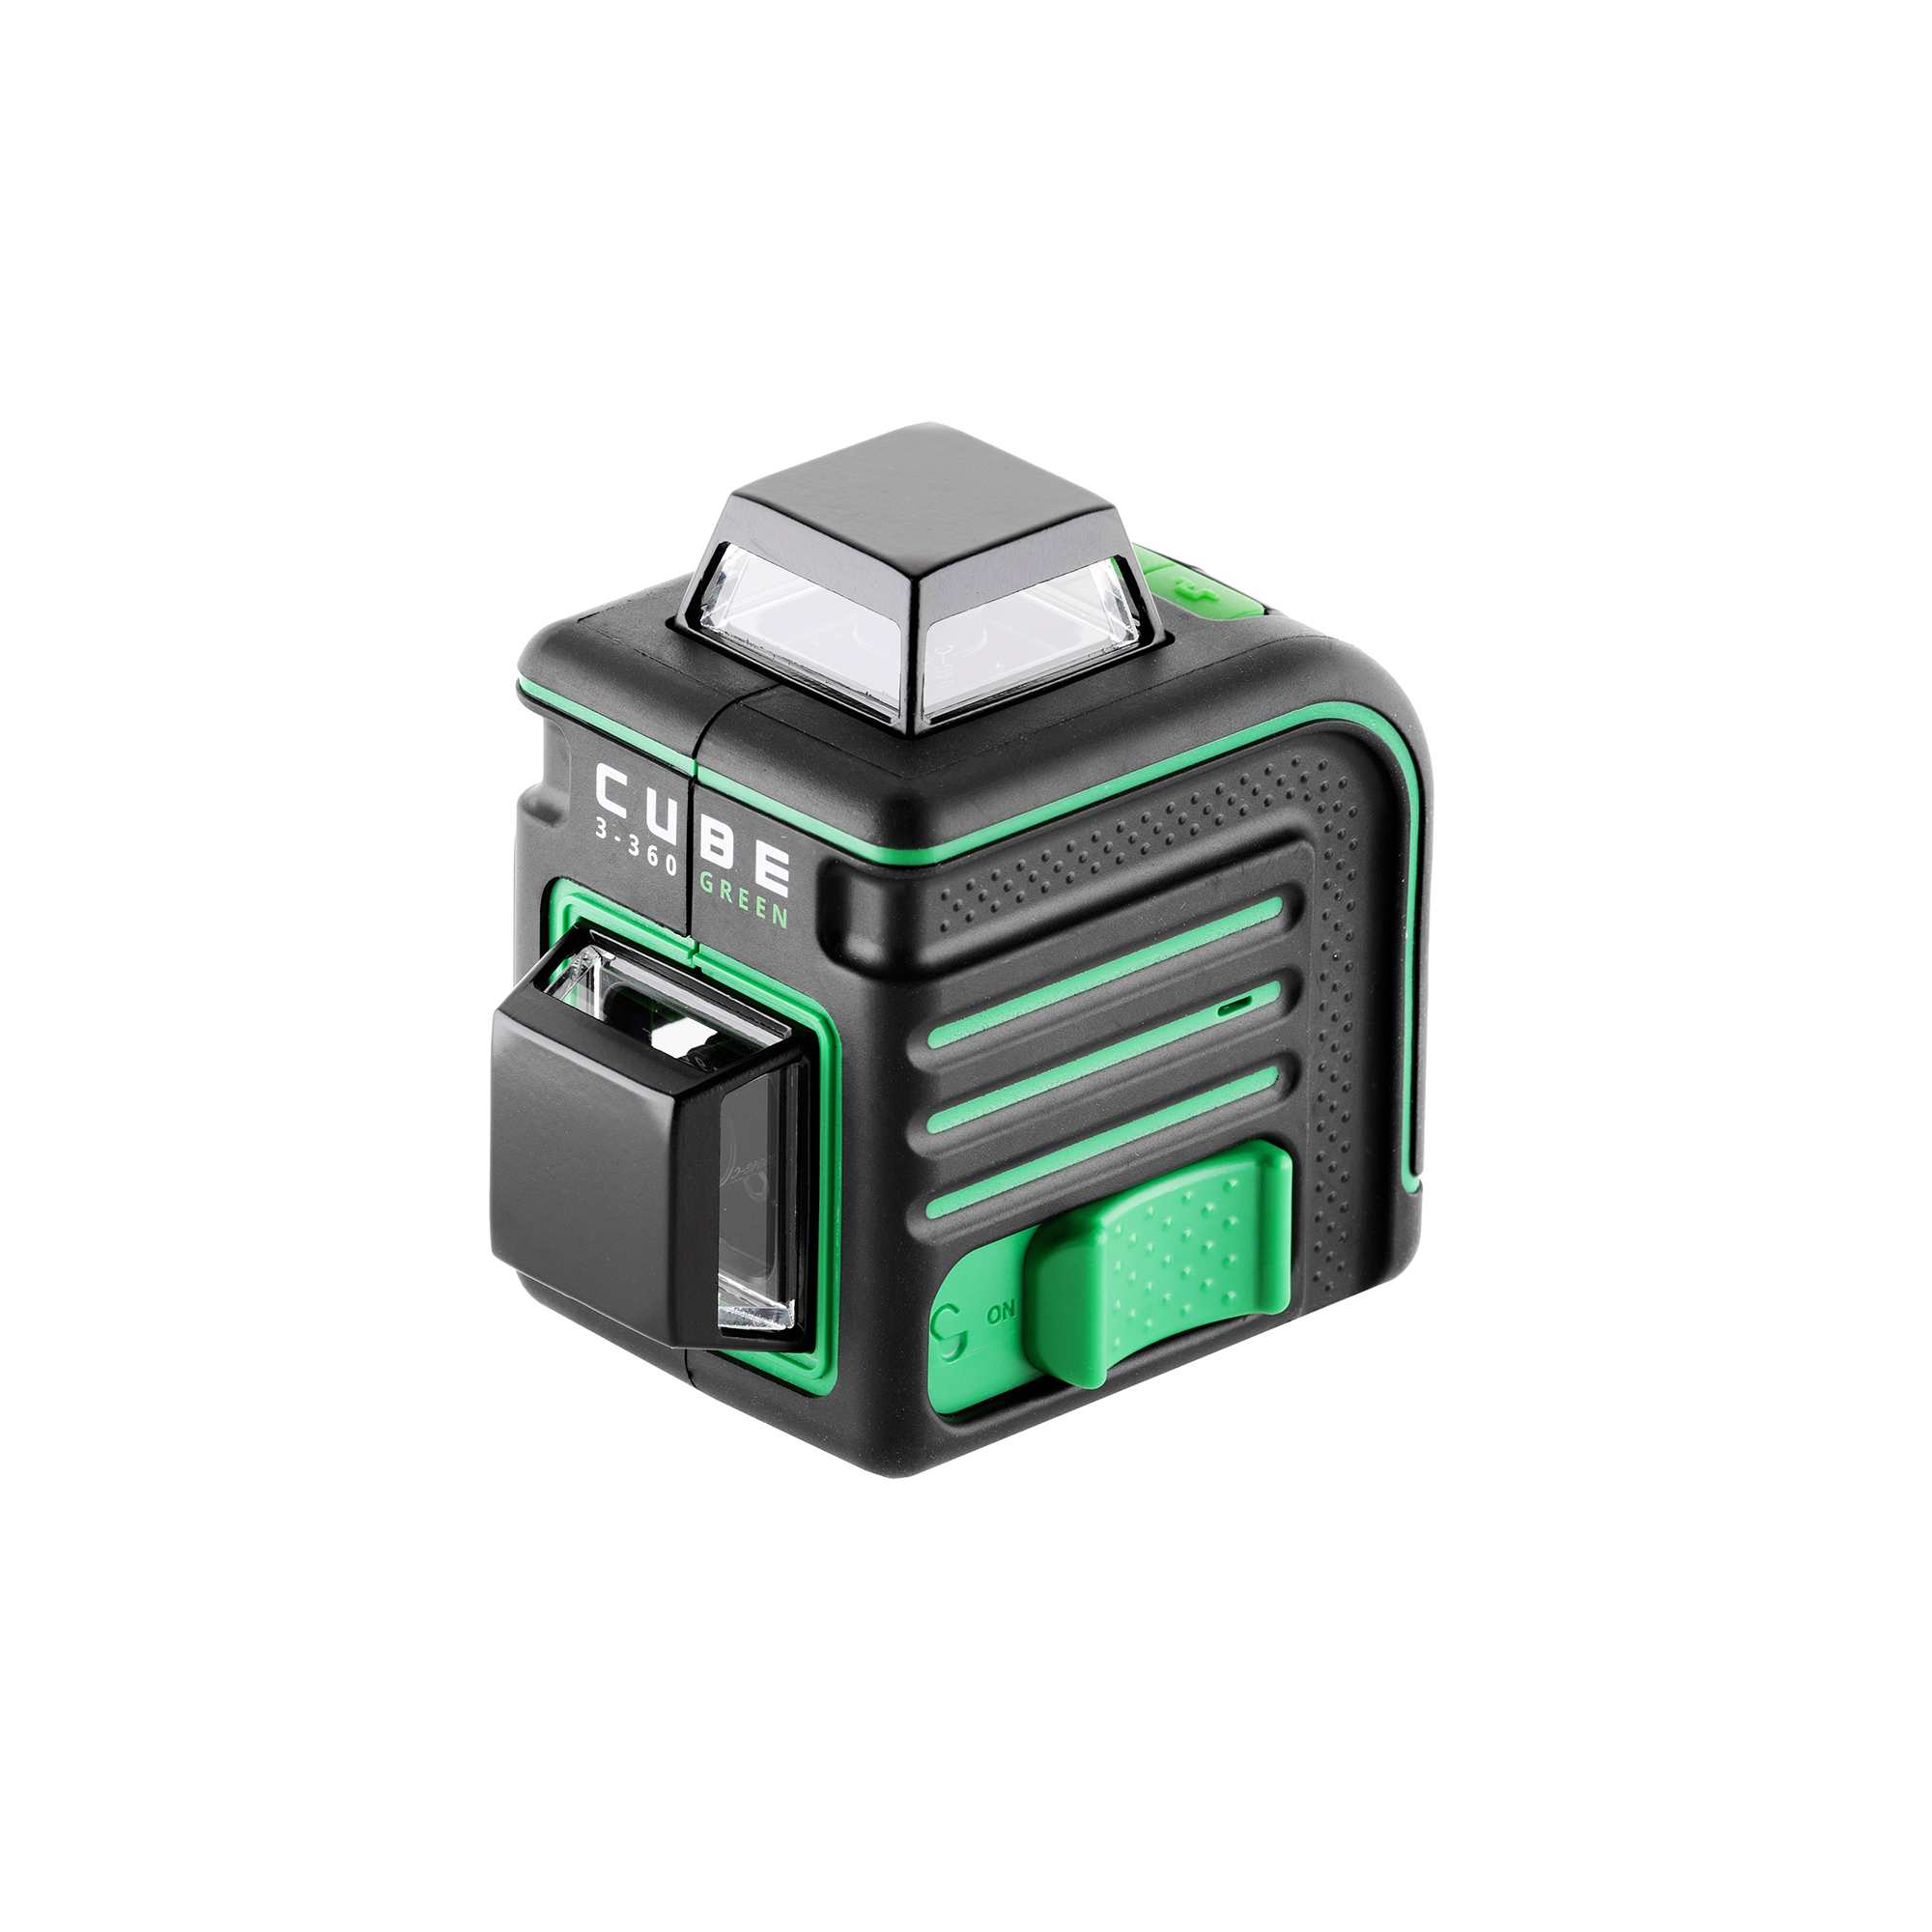 Лазерный уровень ada cube 360 green. Лазерный уровень ada Cube 3-360 Green. Лазерный уровень ada Cube 3-360 Green Basic Edition а00560. Лазерный уровень ada Cube 3-360 Green Home Edition а00566. Ada Cube 3-360 Green Ultimate Edition.